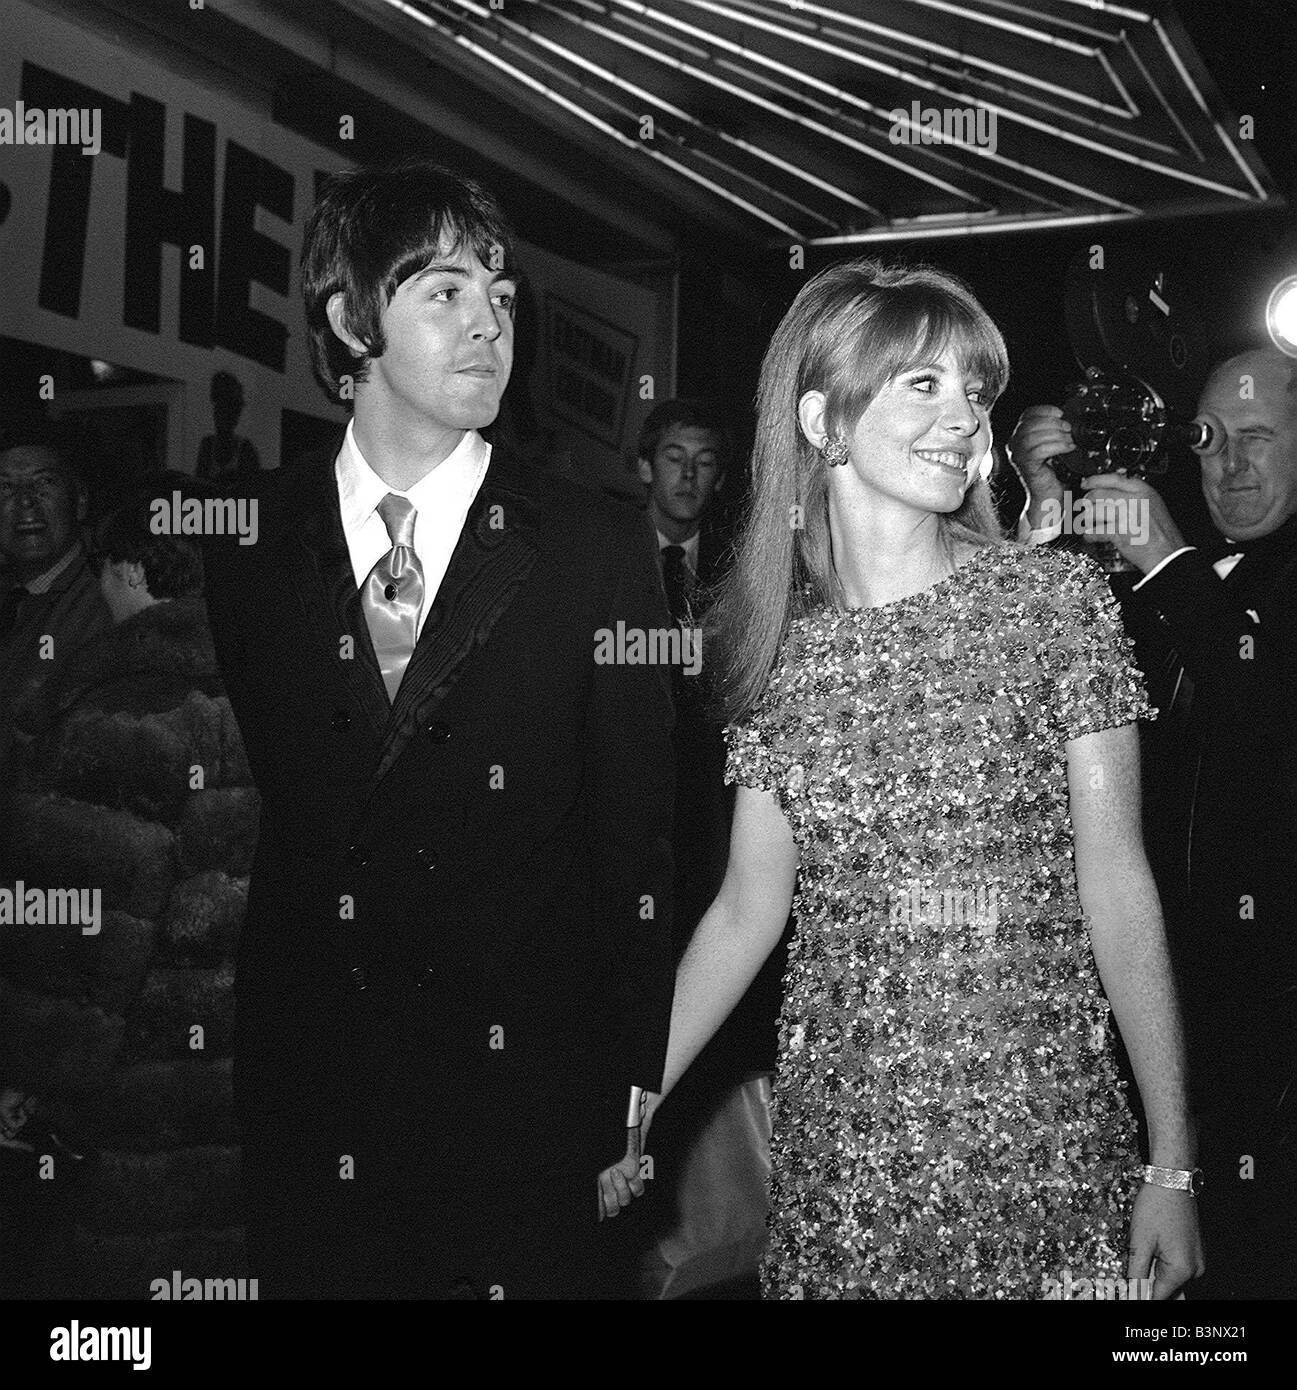 Paul McCartney et petite amie Jane Asher arrivant à la première de film que j'ai remporté la guerre qui stars autres Beatles chanteur John Lennon à Piccadilly Circus, Octobre 1967 Banque D'Images